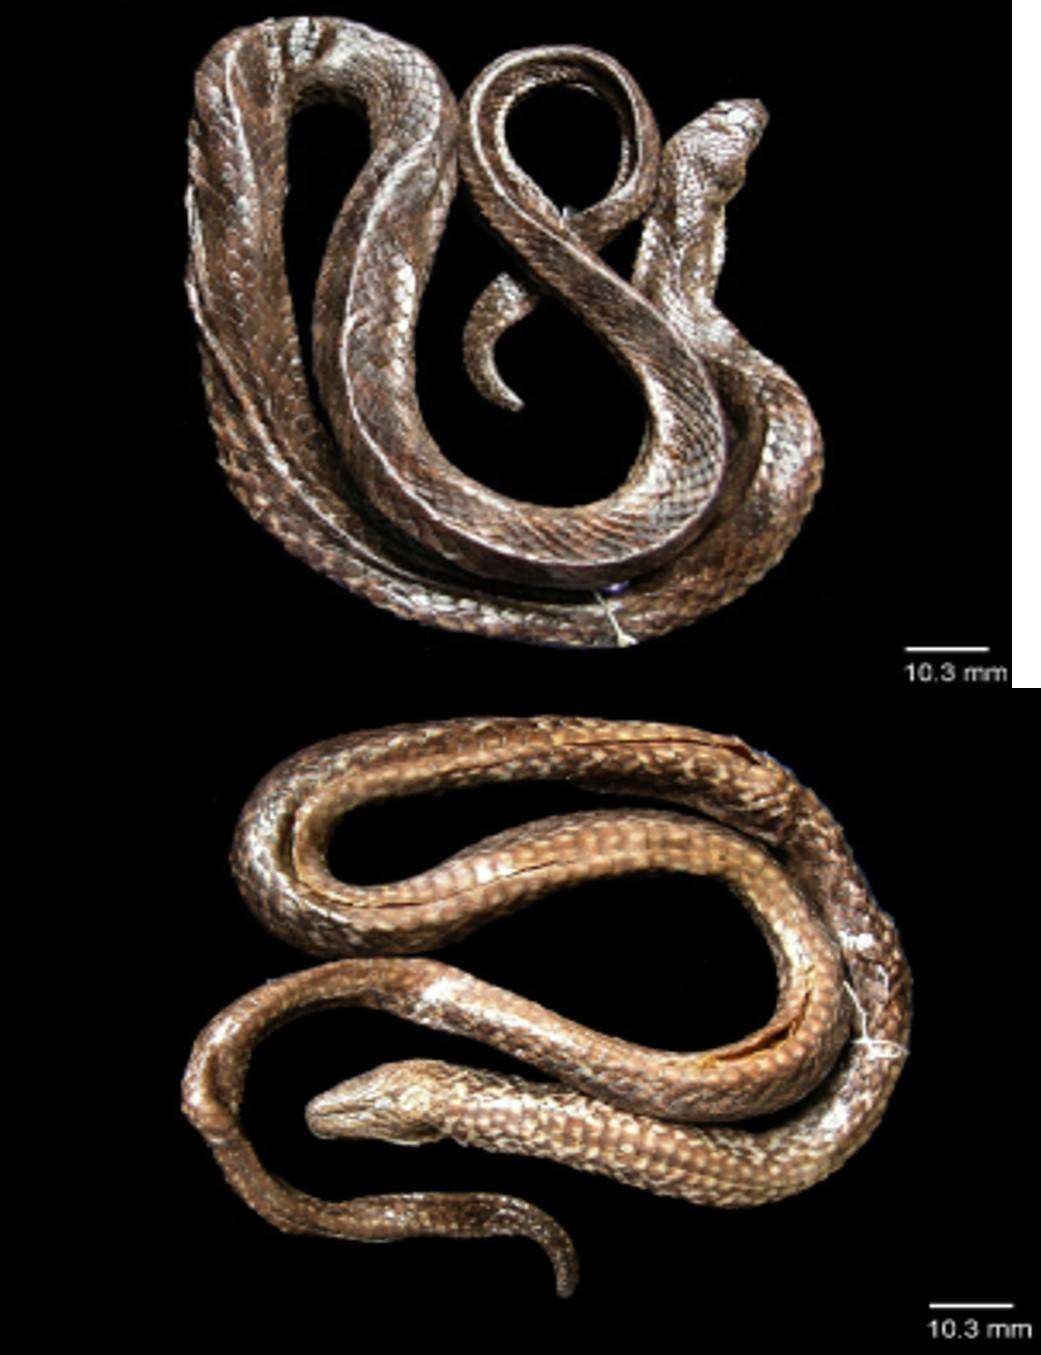 Spesies ular air jenis baru berhasil ditemukan Tim peneliti Badan Riset dan Inovasi Nasional (BRIN) dengan nama Hypsiscopus indonesiensis dari Danau Towuti, Sulawesi Selatan.  Temuan ini melengkapi 60 spesies ular di Sulawesi. (Foto: dok. BRIN)